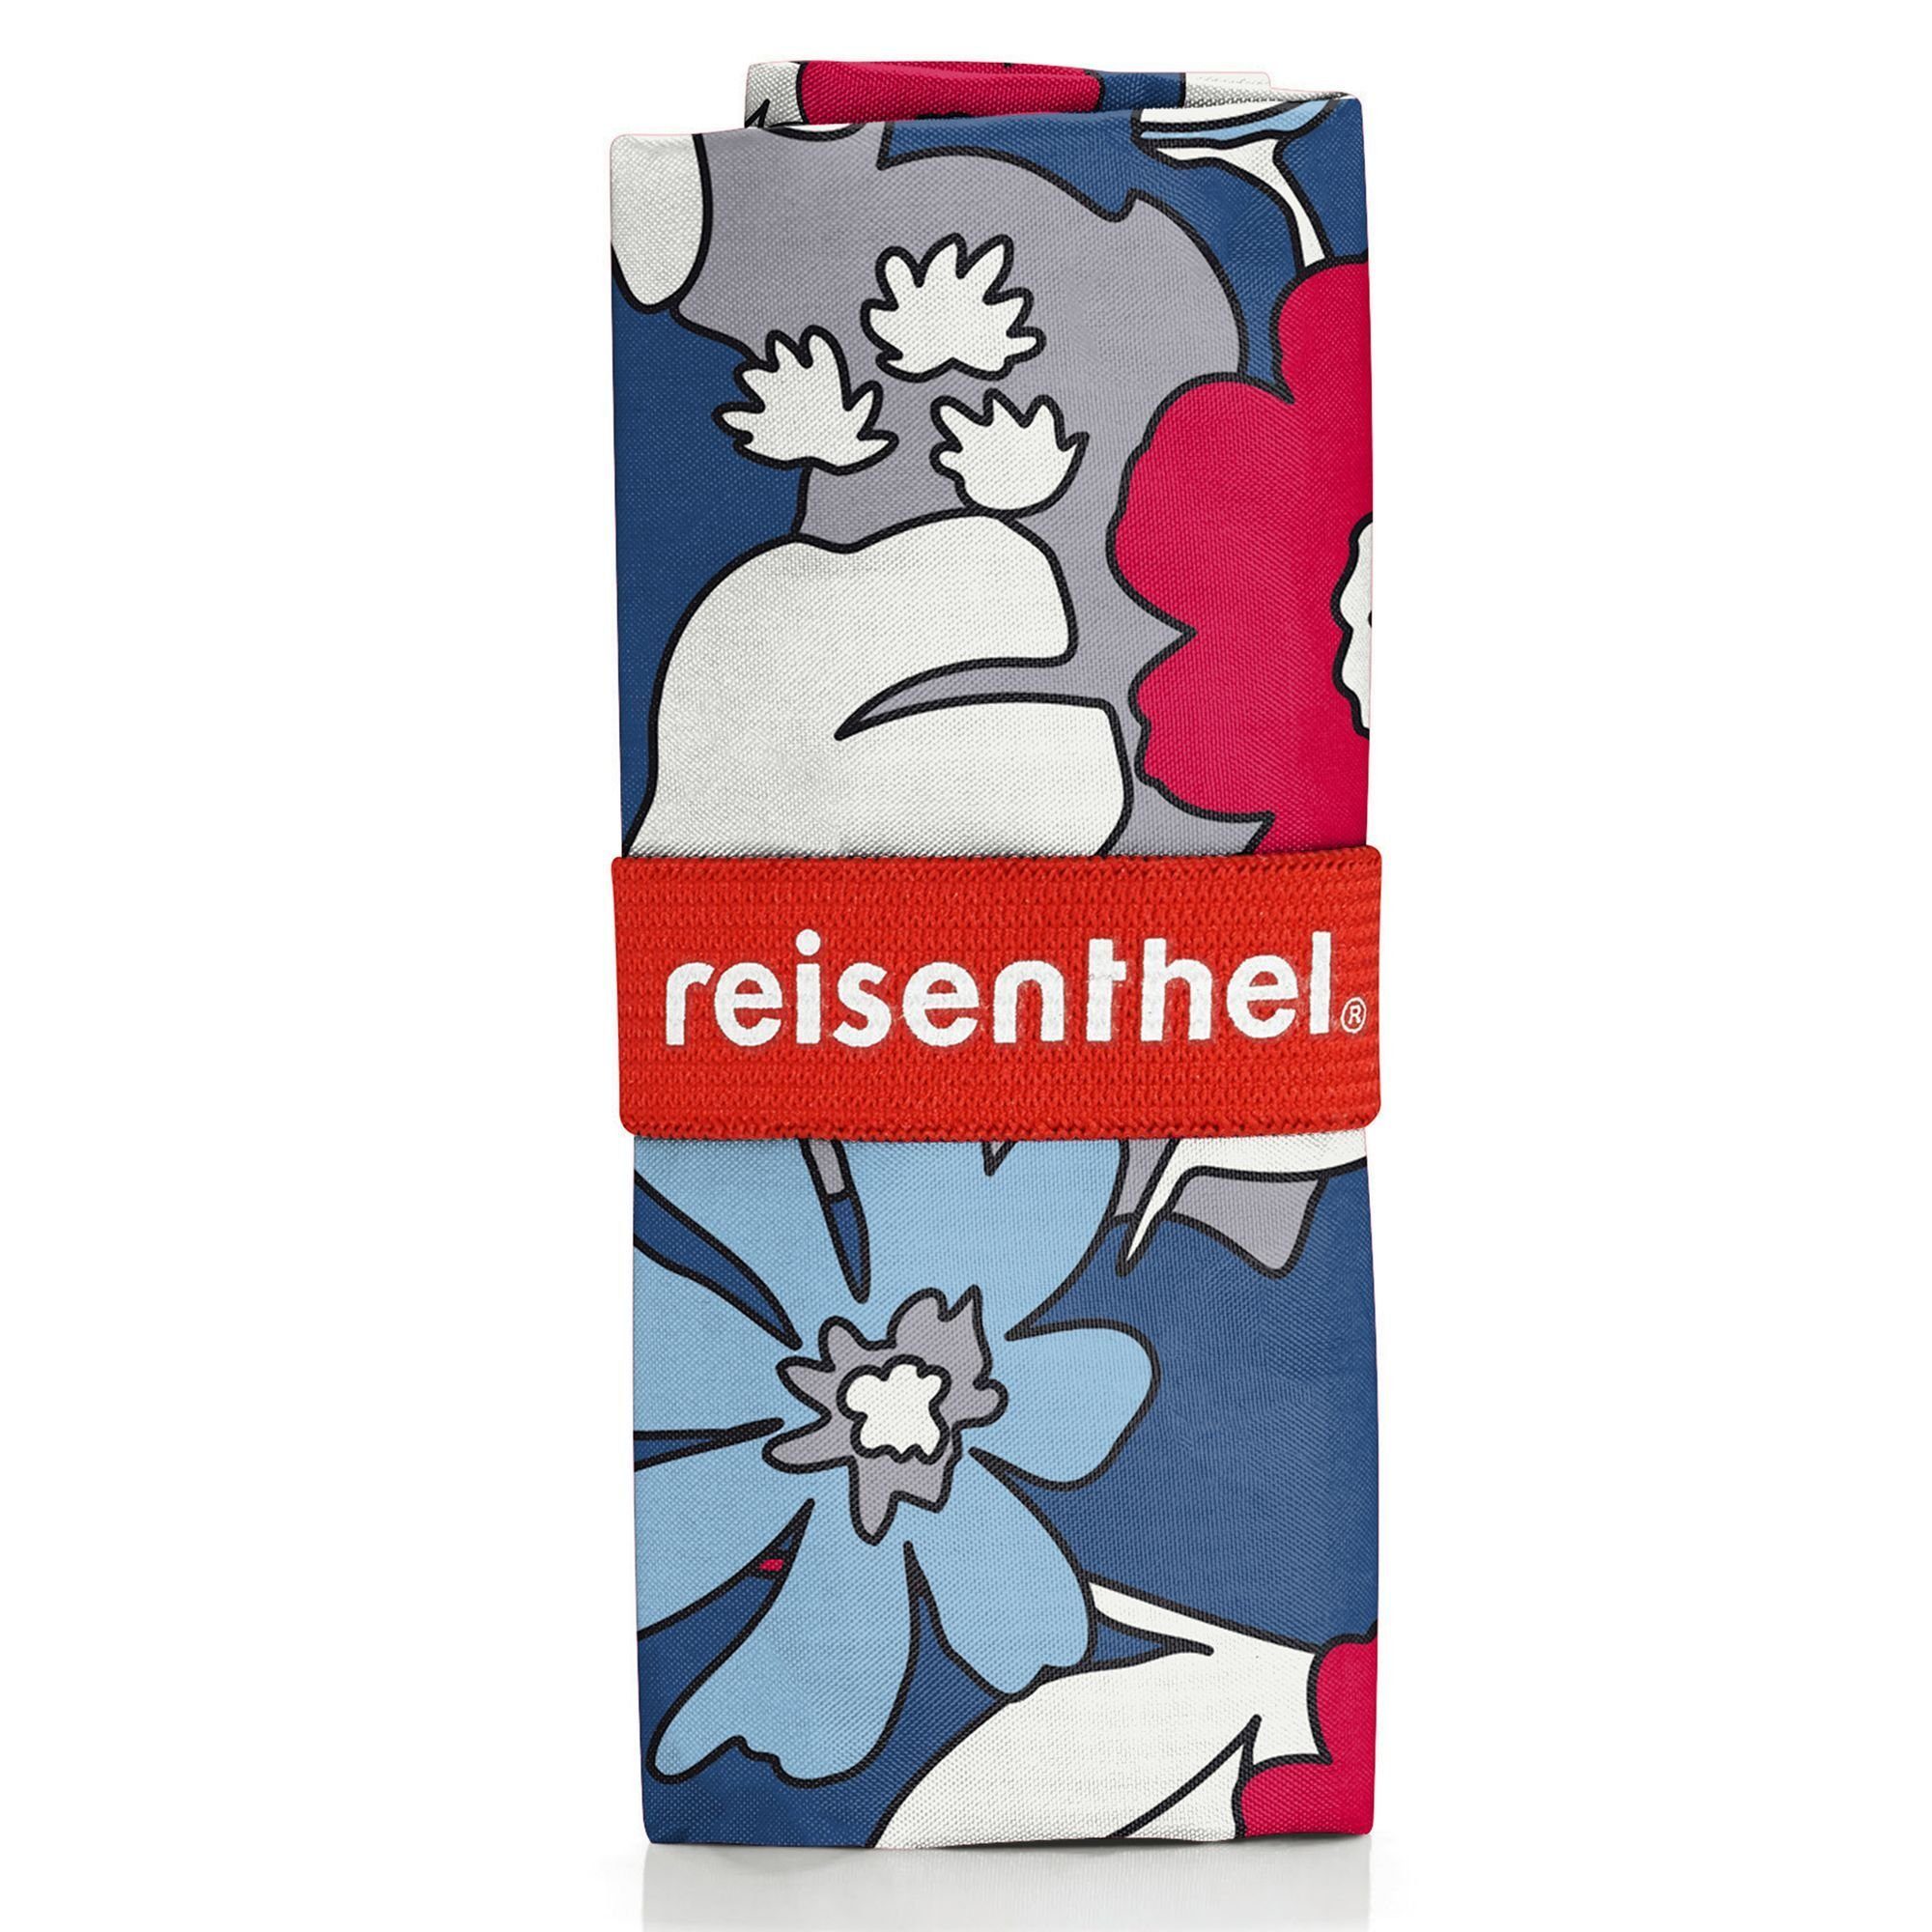 REISENTHEL® Einkaufsbeutel Travelling, l, 16 PET florist indigo